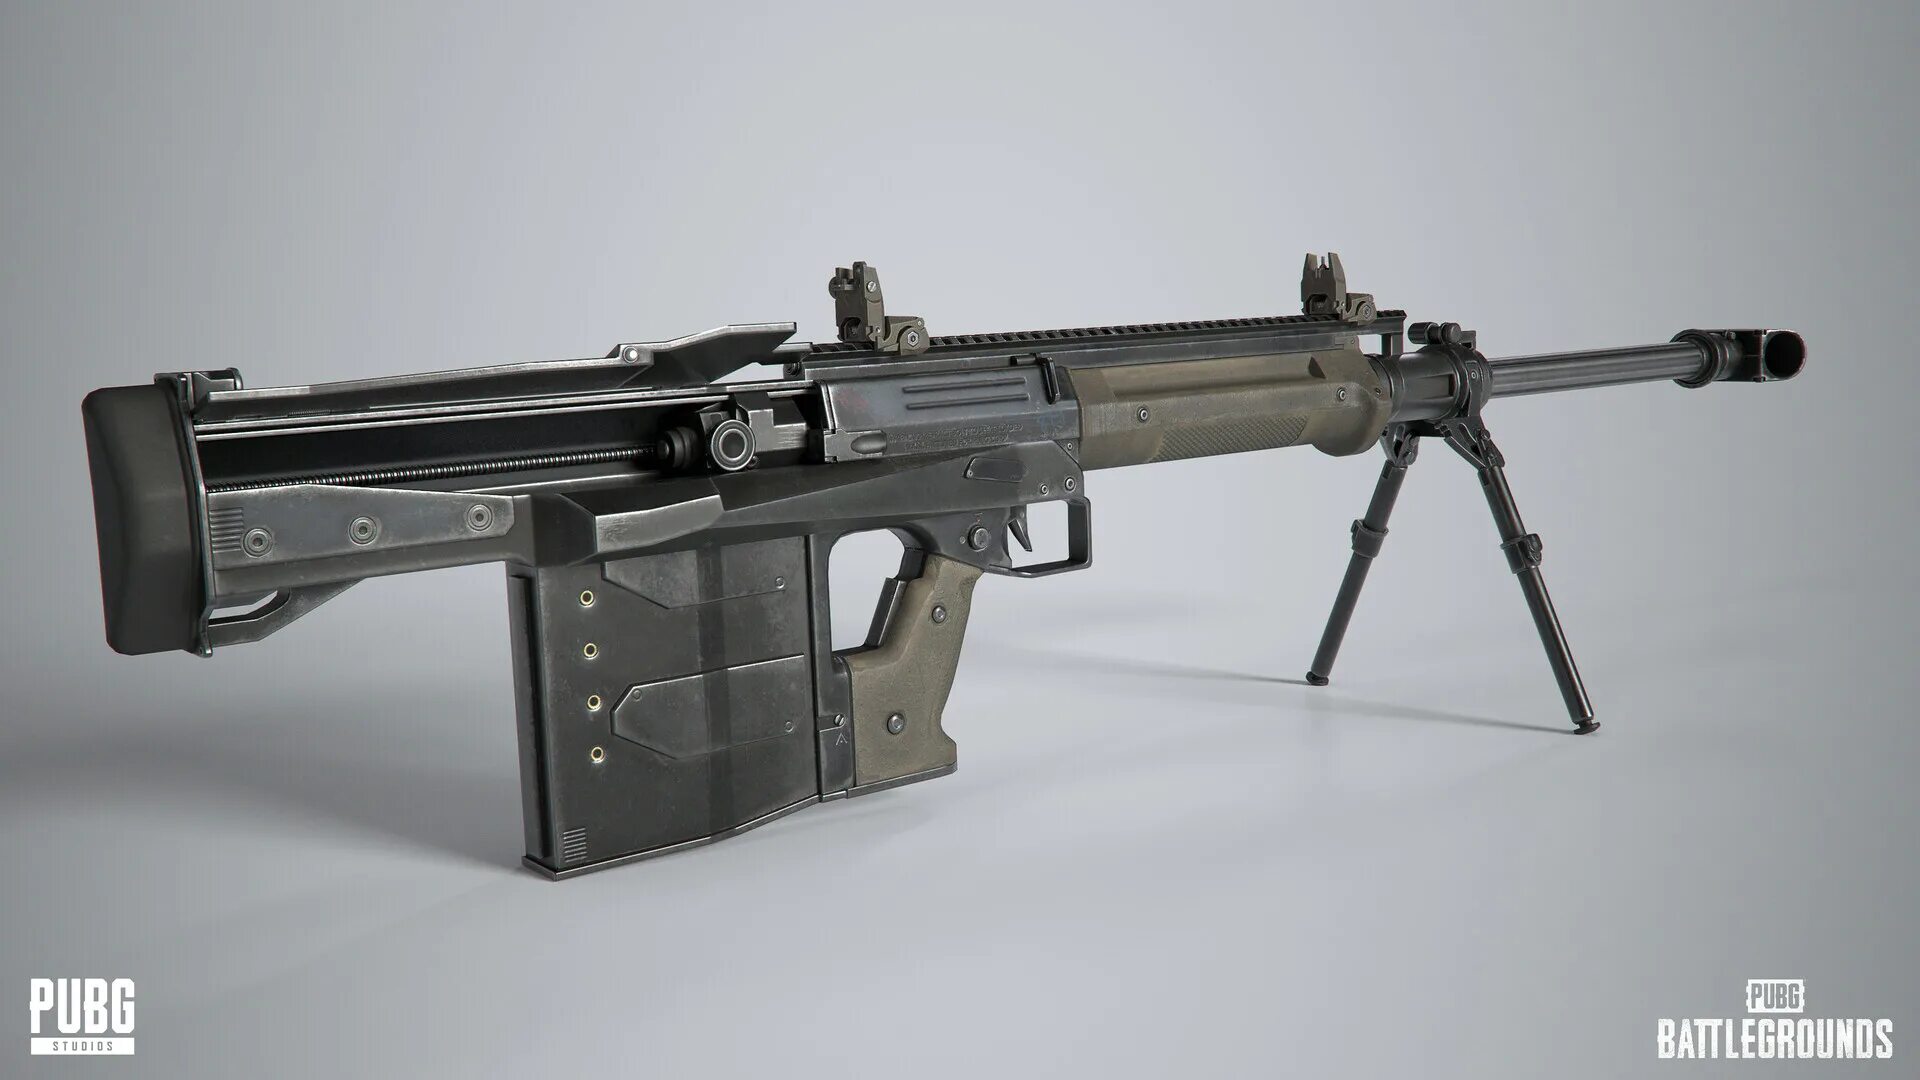 Снайперская винтовка gm6 Lynx. Amr 2 винтовка. Amr снайперская винтовка. Amr Lynx оружие PUBG. Рысь пабг